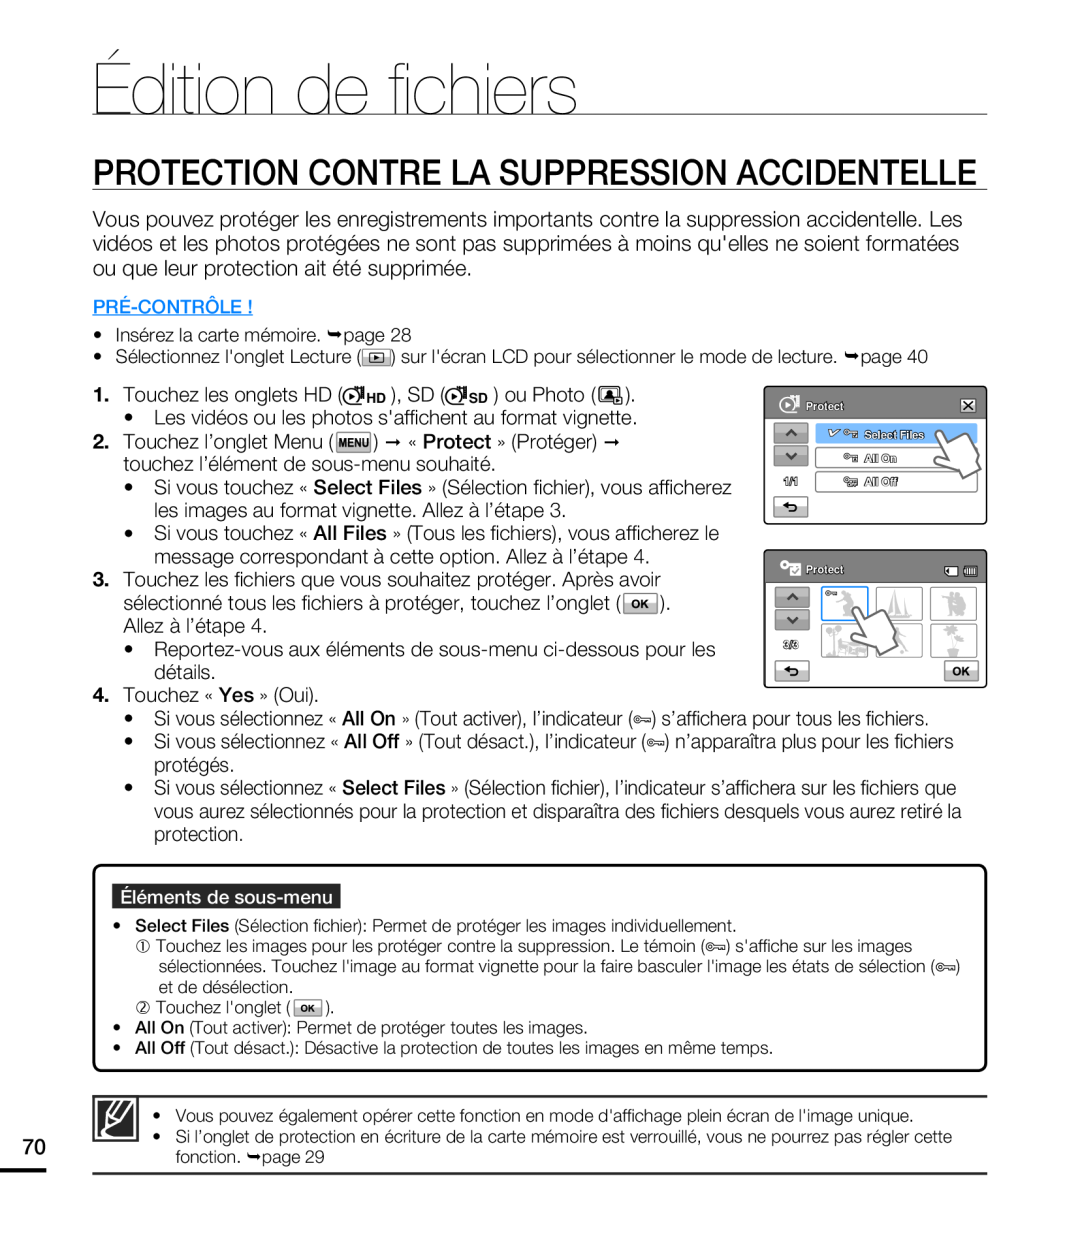 Samsung HMX-T10WP/EDC manual Protection Contre La Suppression Accidentelle, Édition de ﬁ chiers,  « Protect » Protéger  